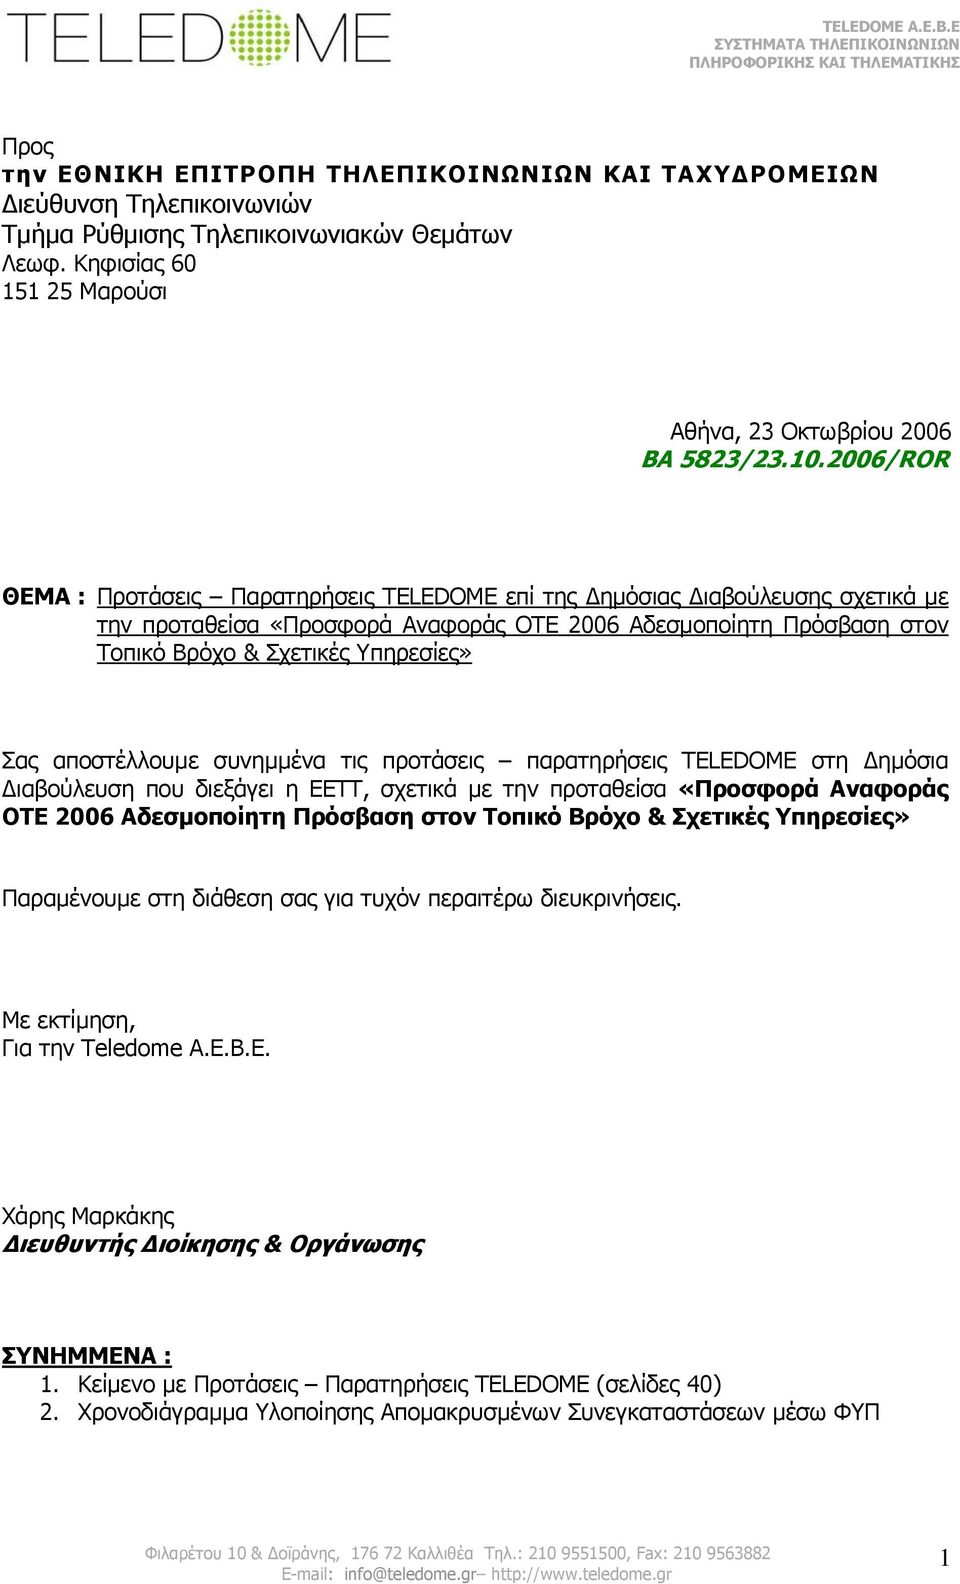 αποστέλλουµε συνηµµένα τις προτάσεις παρατηρήσεις TELEDOME στη ηµόσια ιαβούλευση που διεξάγει η ΕΕΤΤ, σχετικά µε την προταθείσα «Προσφορά Αναφοράς ΟΤΕ 2006 Αδεσµοποίητη Πρόσβαση στον Τοπικό Βρόχο &